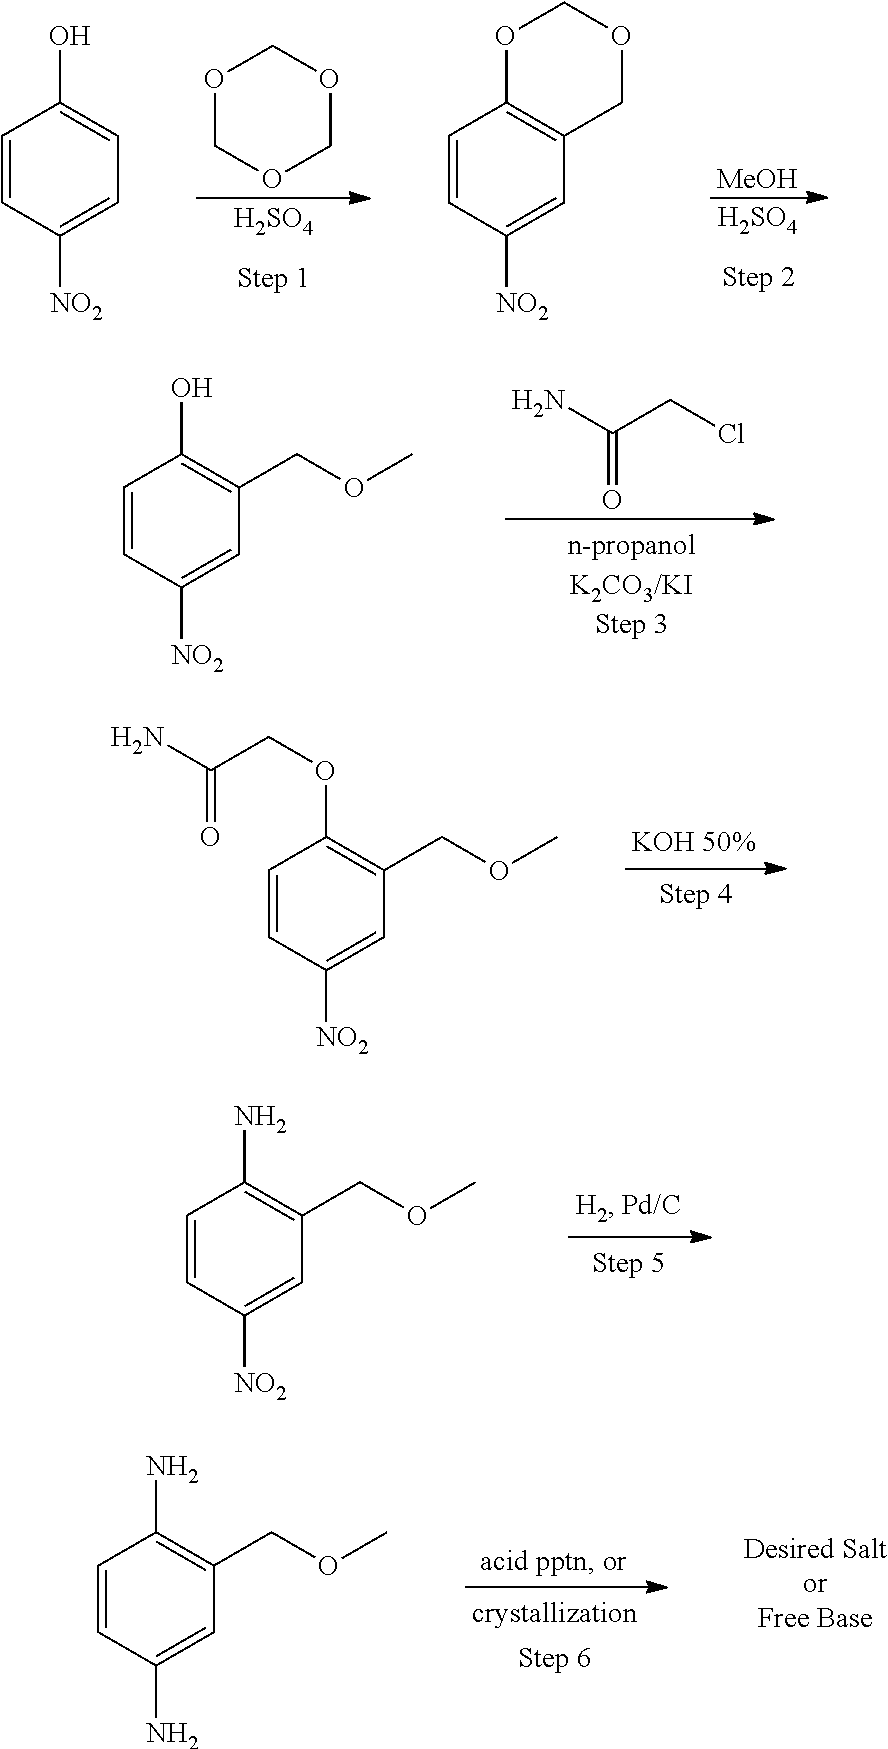 Methods of Synthesizing 2-Methoxymethyl-1,4-Benzenediamine